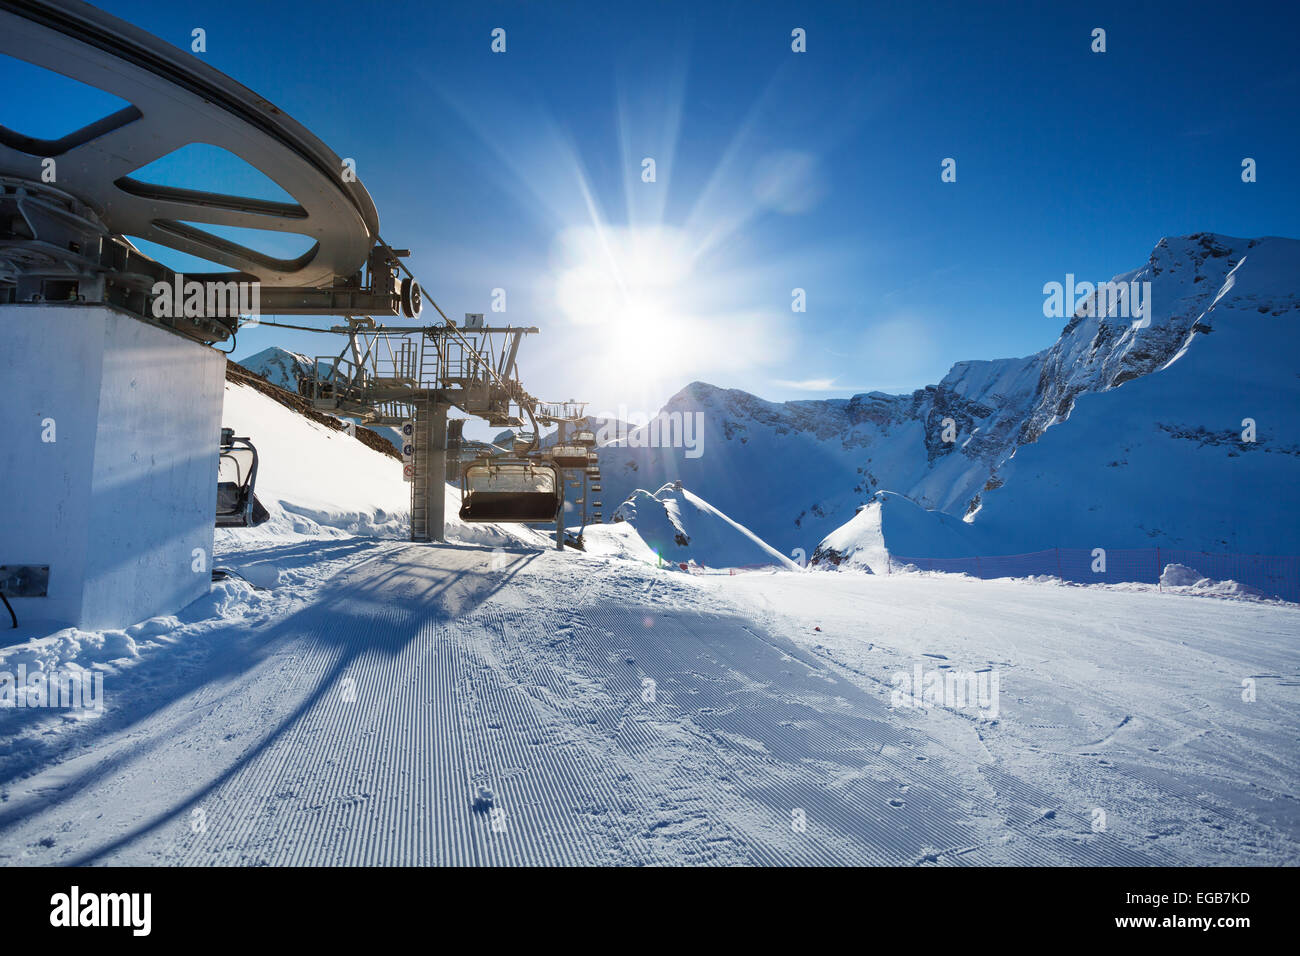 Ski lift near ski-track of Caucasus mountains Stock Photo